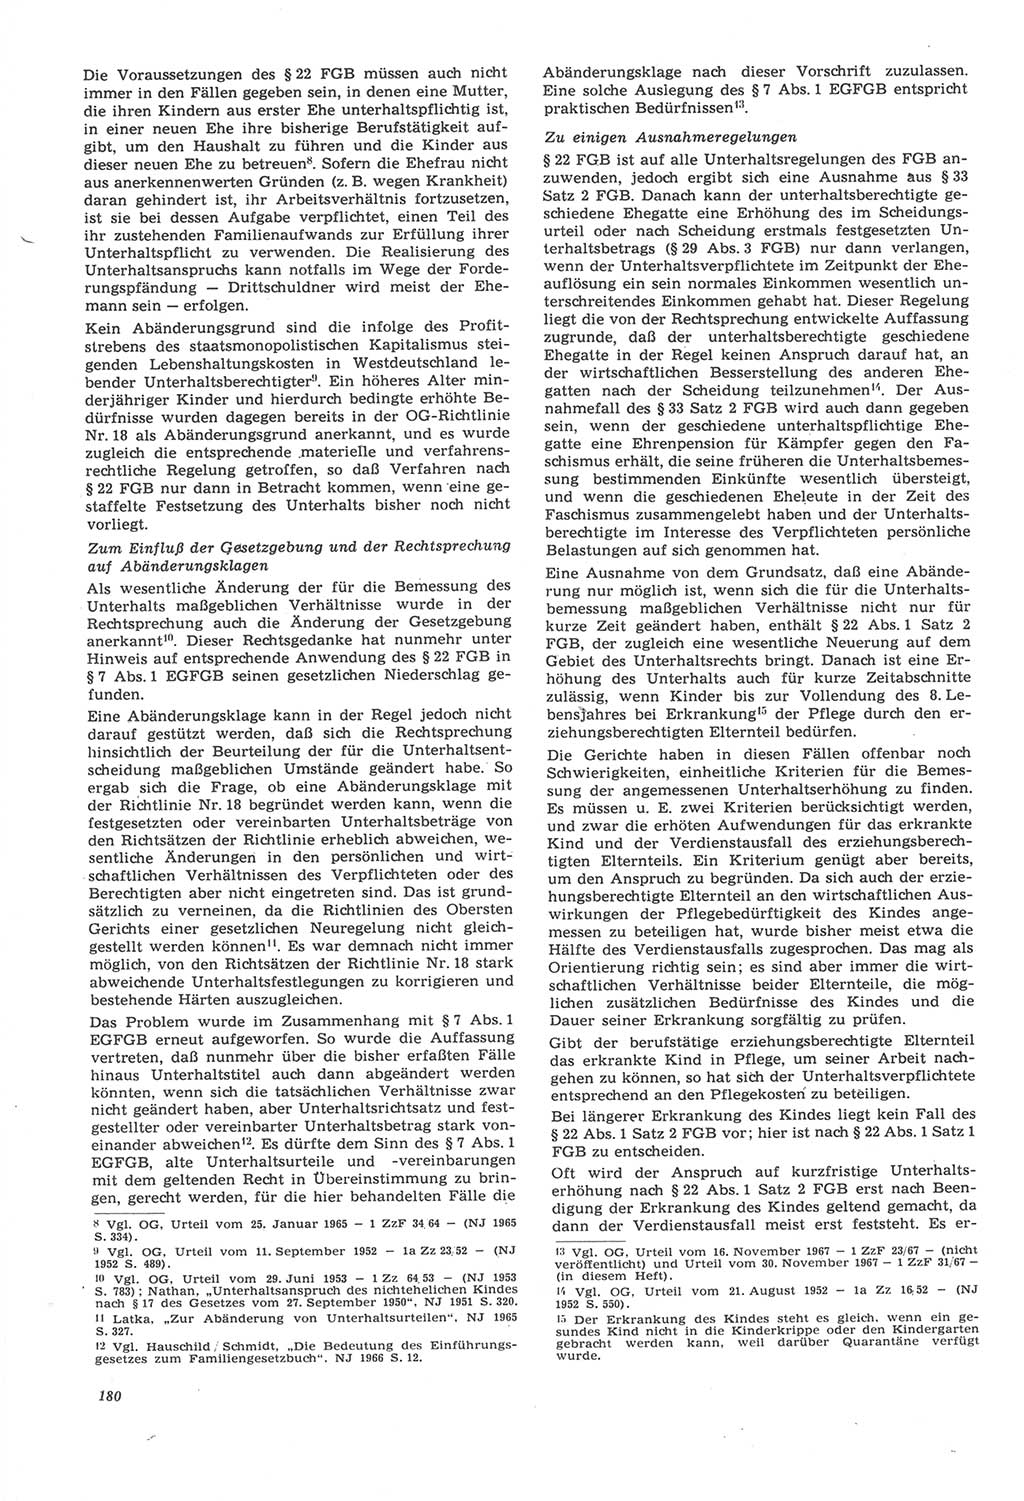 Neue Justiz (NJ), Zeitschrift für Recht und Rechtswissenschaft [Deutsche Demokratische Republik (DDR)], 22. Jahrgang 1968, Seite 180 (NJ DDR 1968, S. 180)